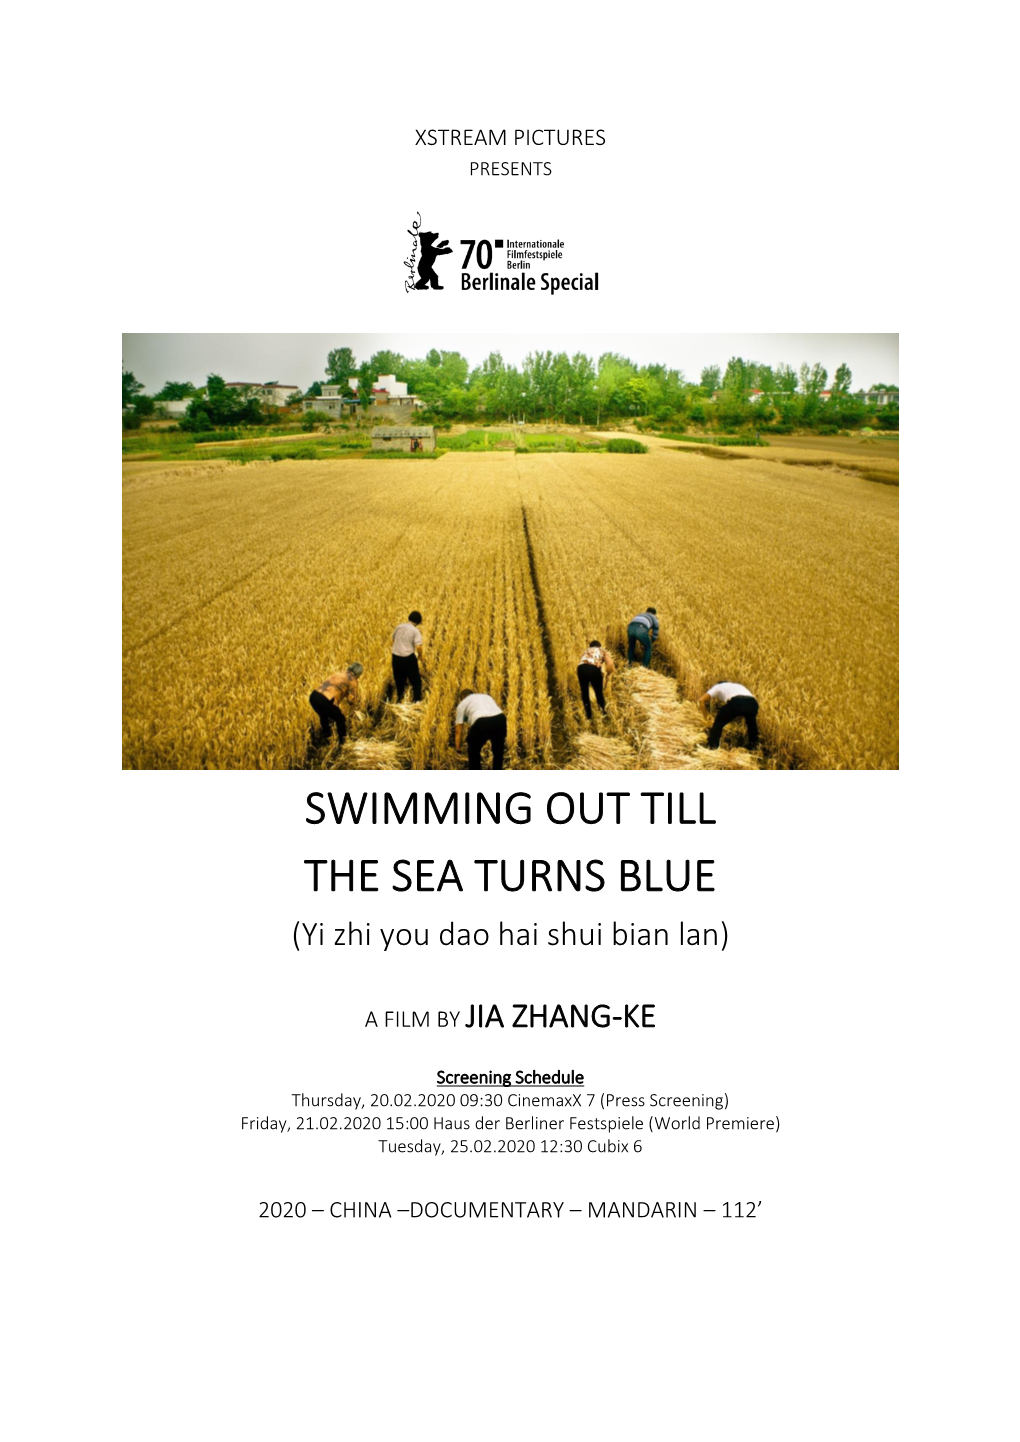 SWIMMING out TILL the SEA TURNS BLUE (Yi Zhi You Dao Hai Shui Bian Lan)